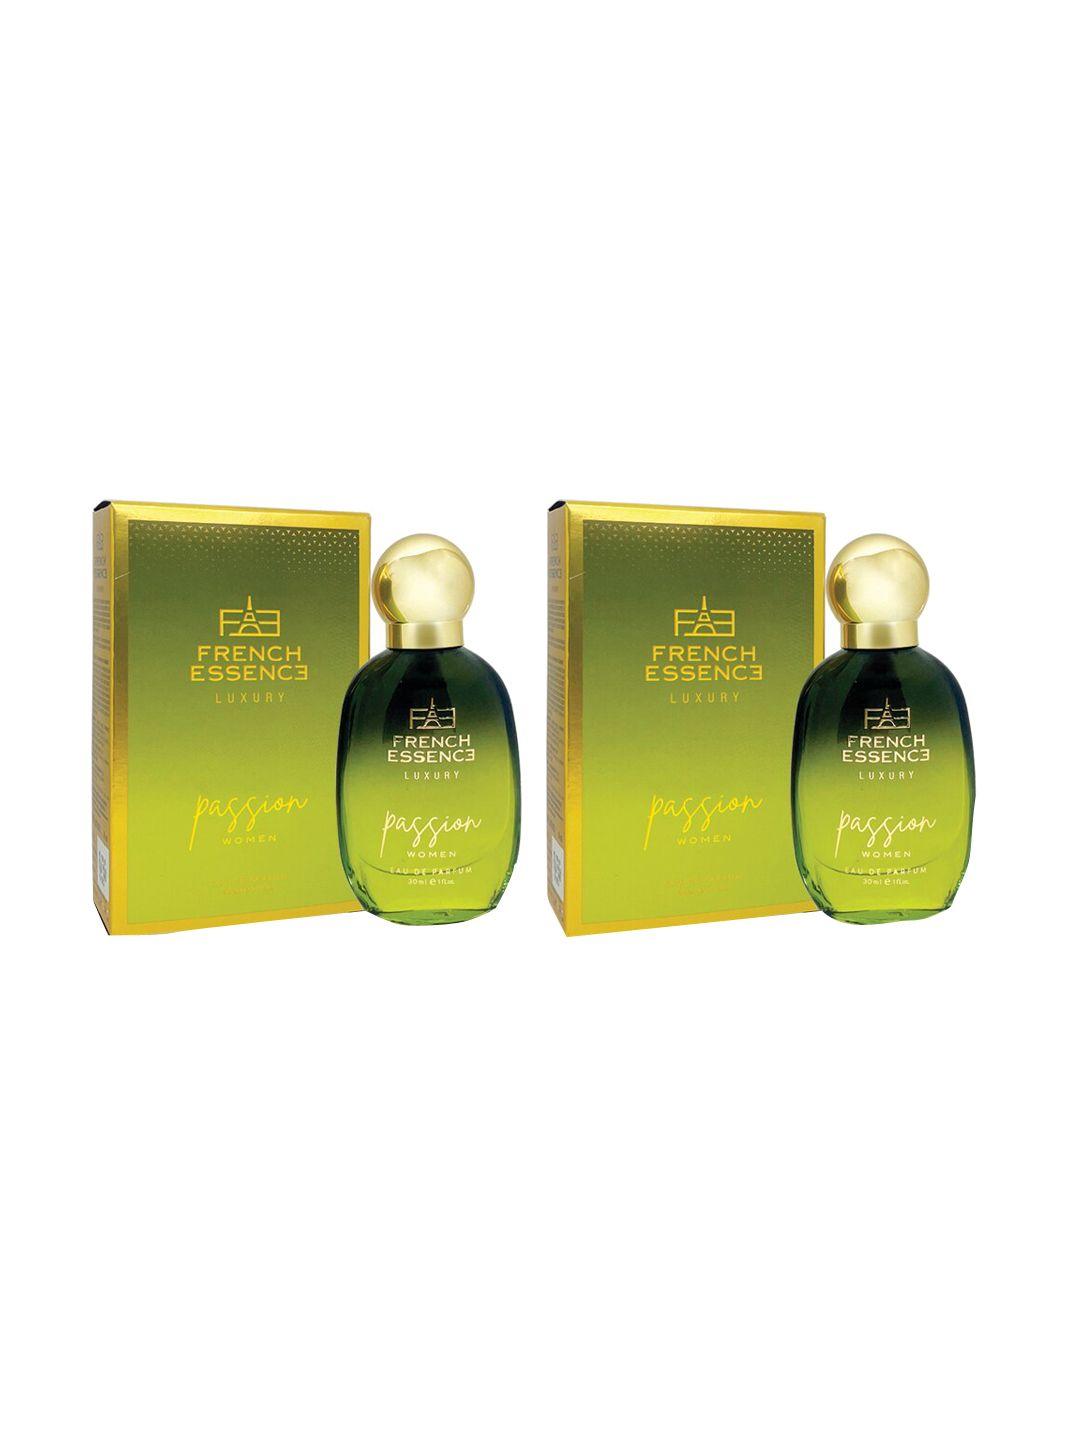 french essence women set of 2 passion long lasting luxury eau de parfum - 30 ml each